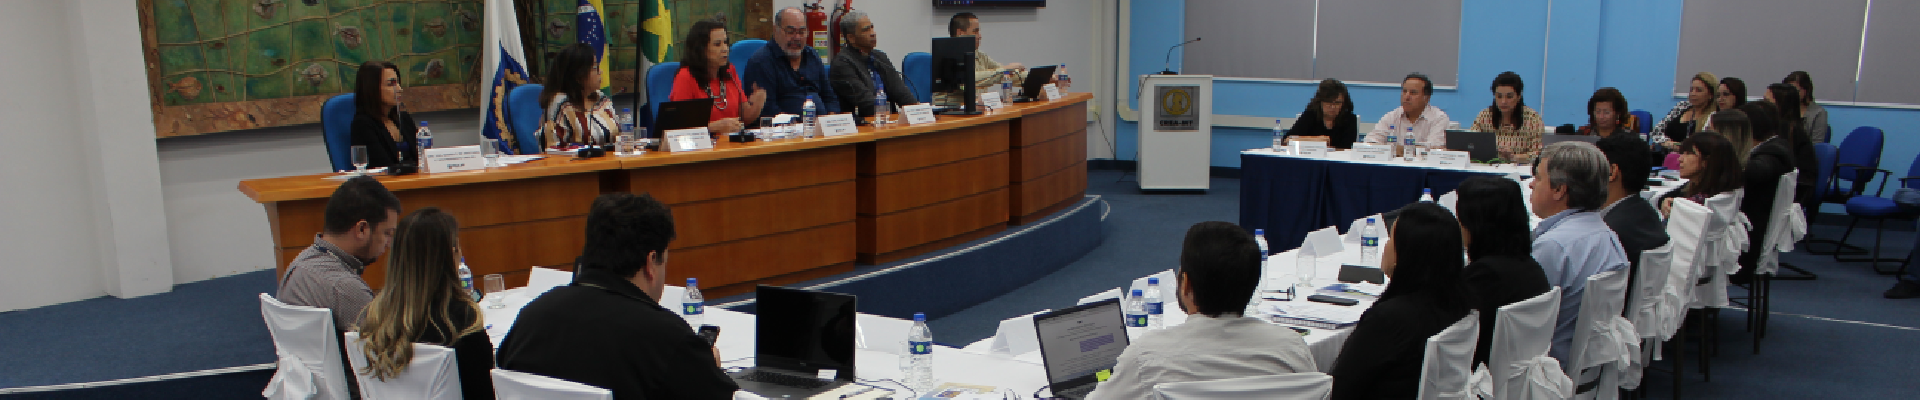 “ Processo eleitoral, fiscalização e alinhamento entre os Regionais” foram destaques do 3° CPCO sediado no Crea-MT